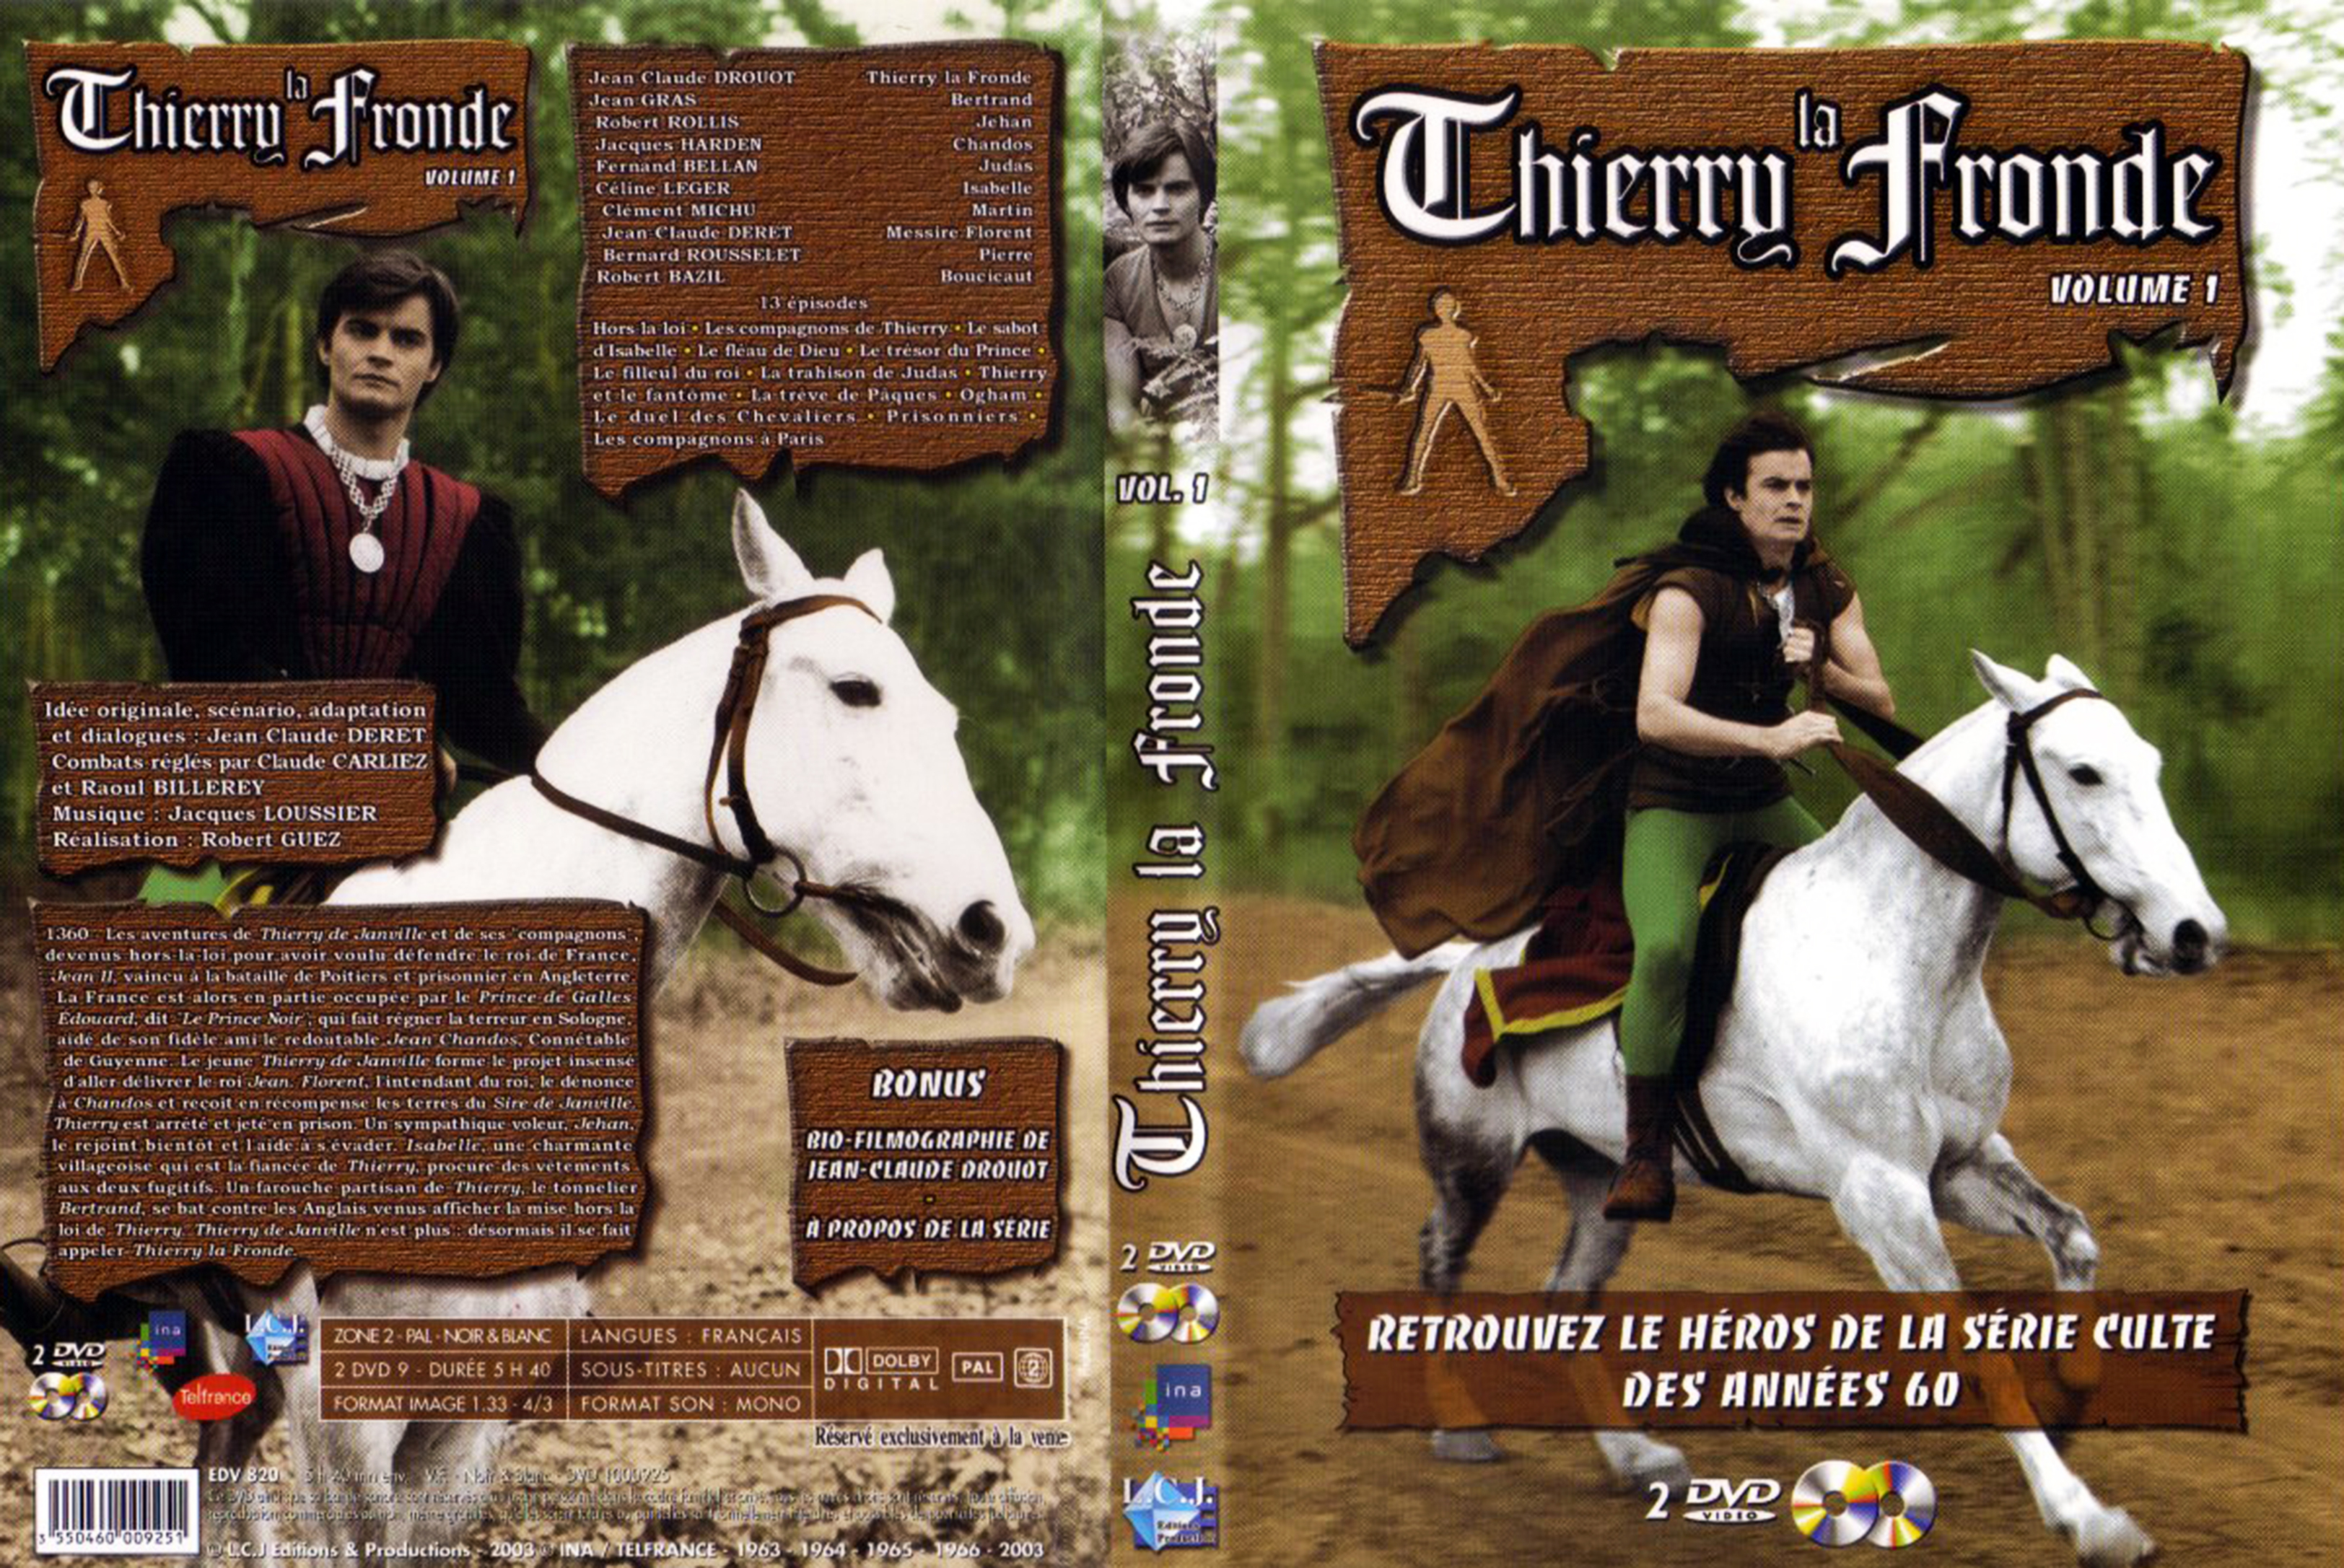 Jaquette DVD Thierry La Fronde vol 01 v2